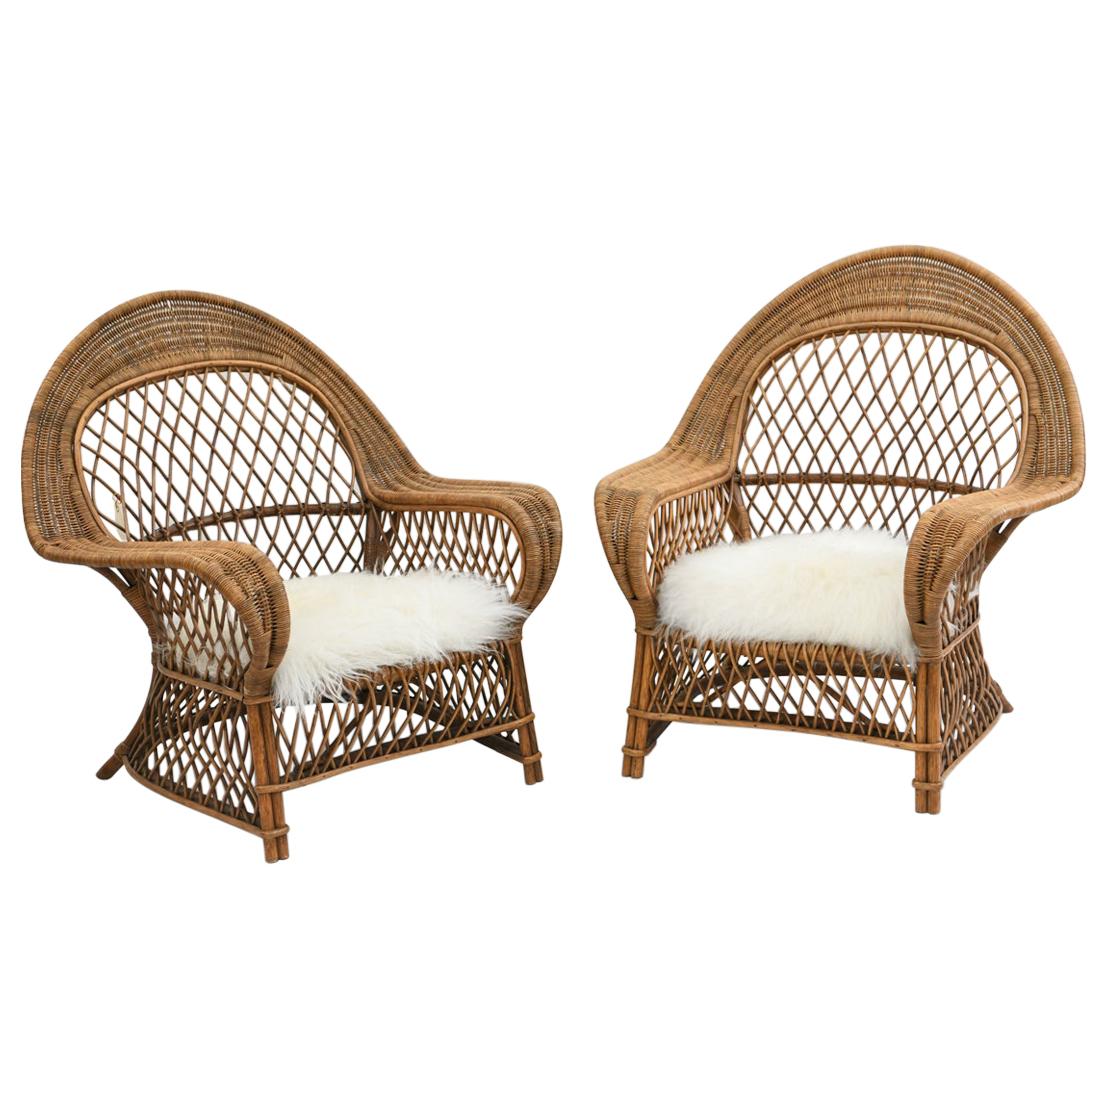 Pair of Danish Rattan Chairs